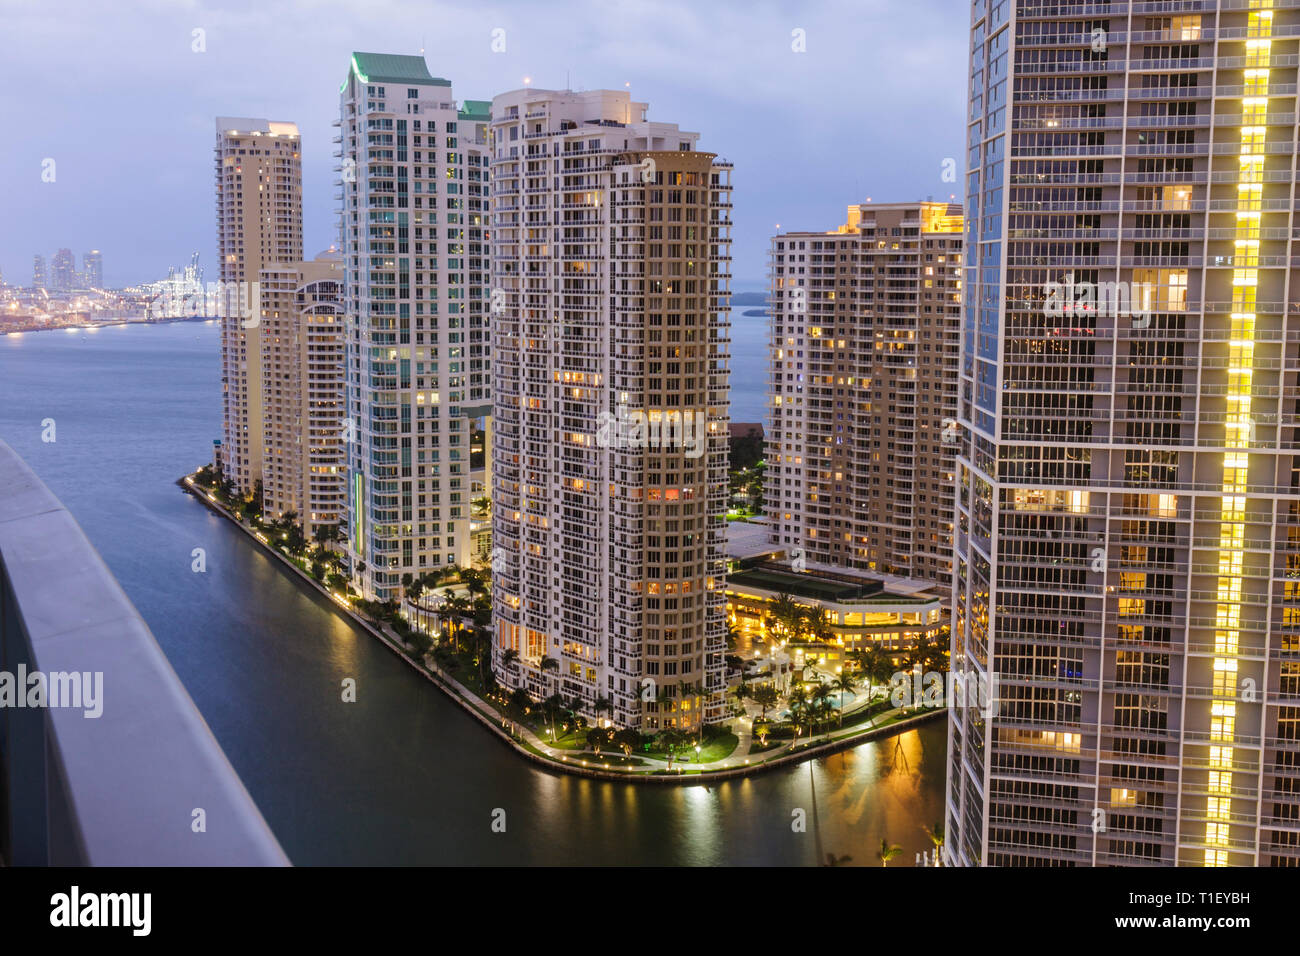 Miami Florida,Brickell Key,vue d'Epic,hôtel,bâtiments,horizon de la ville,condos,gratte-ciel,gratte-ciel de hauteur gratte-ciel gratte-ciel bâtiment bâtiments ci Banque D'Images